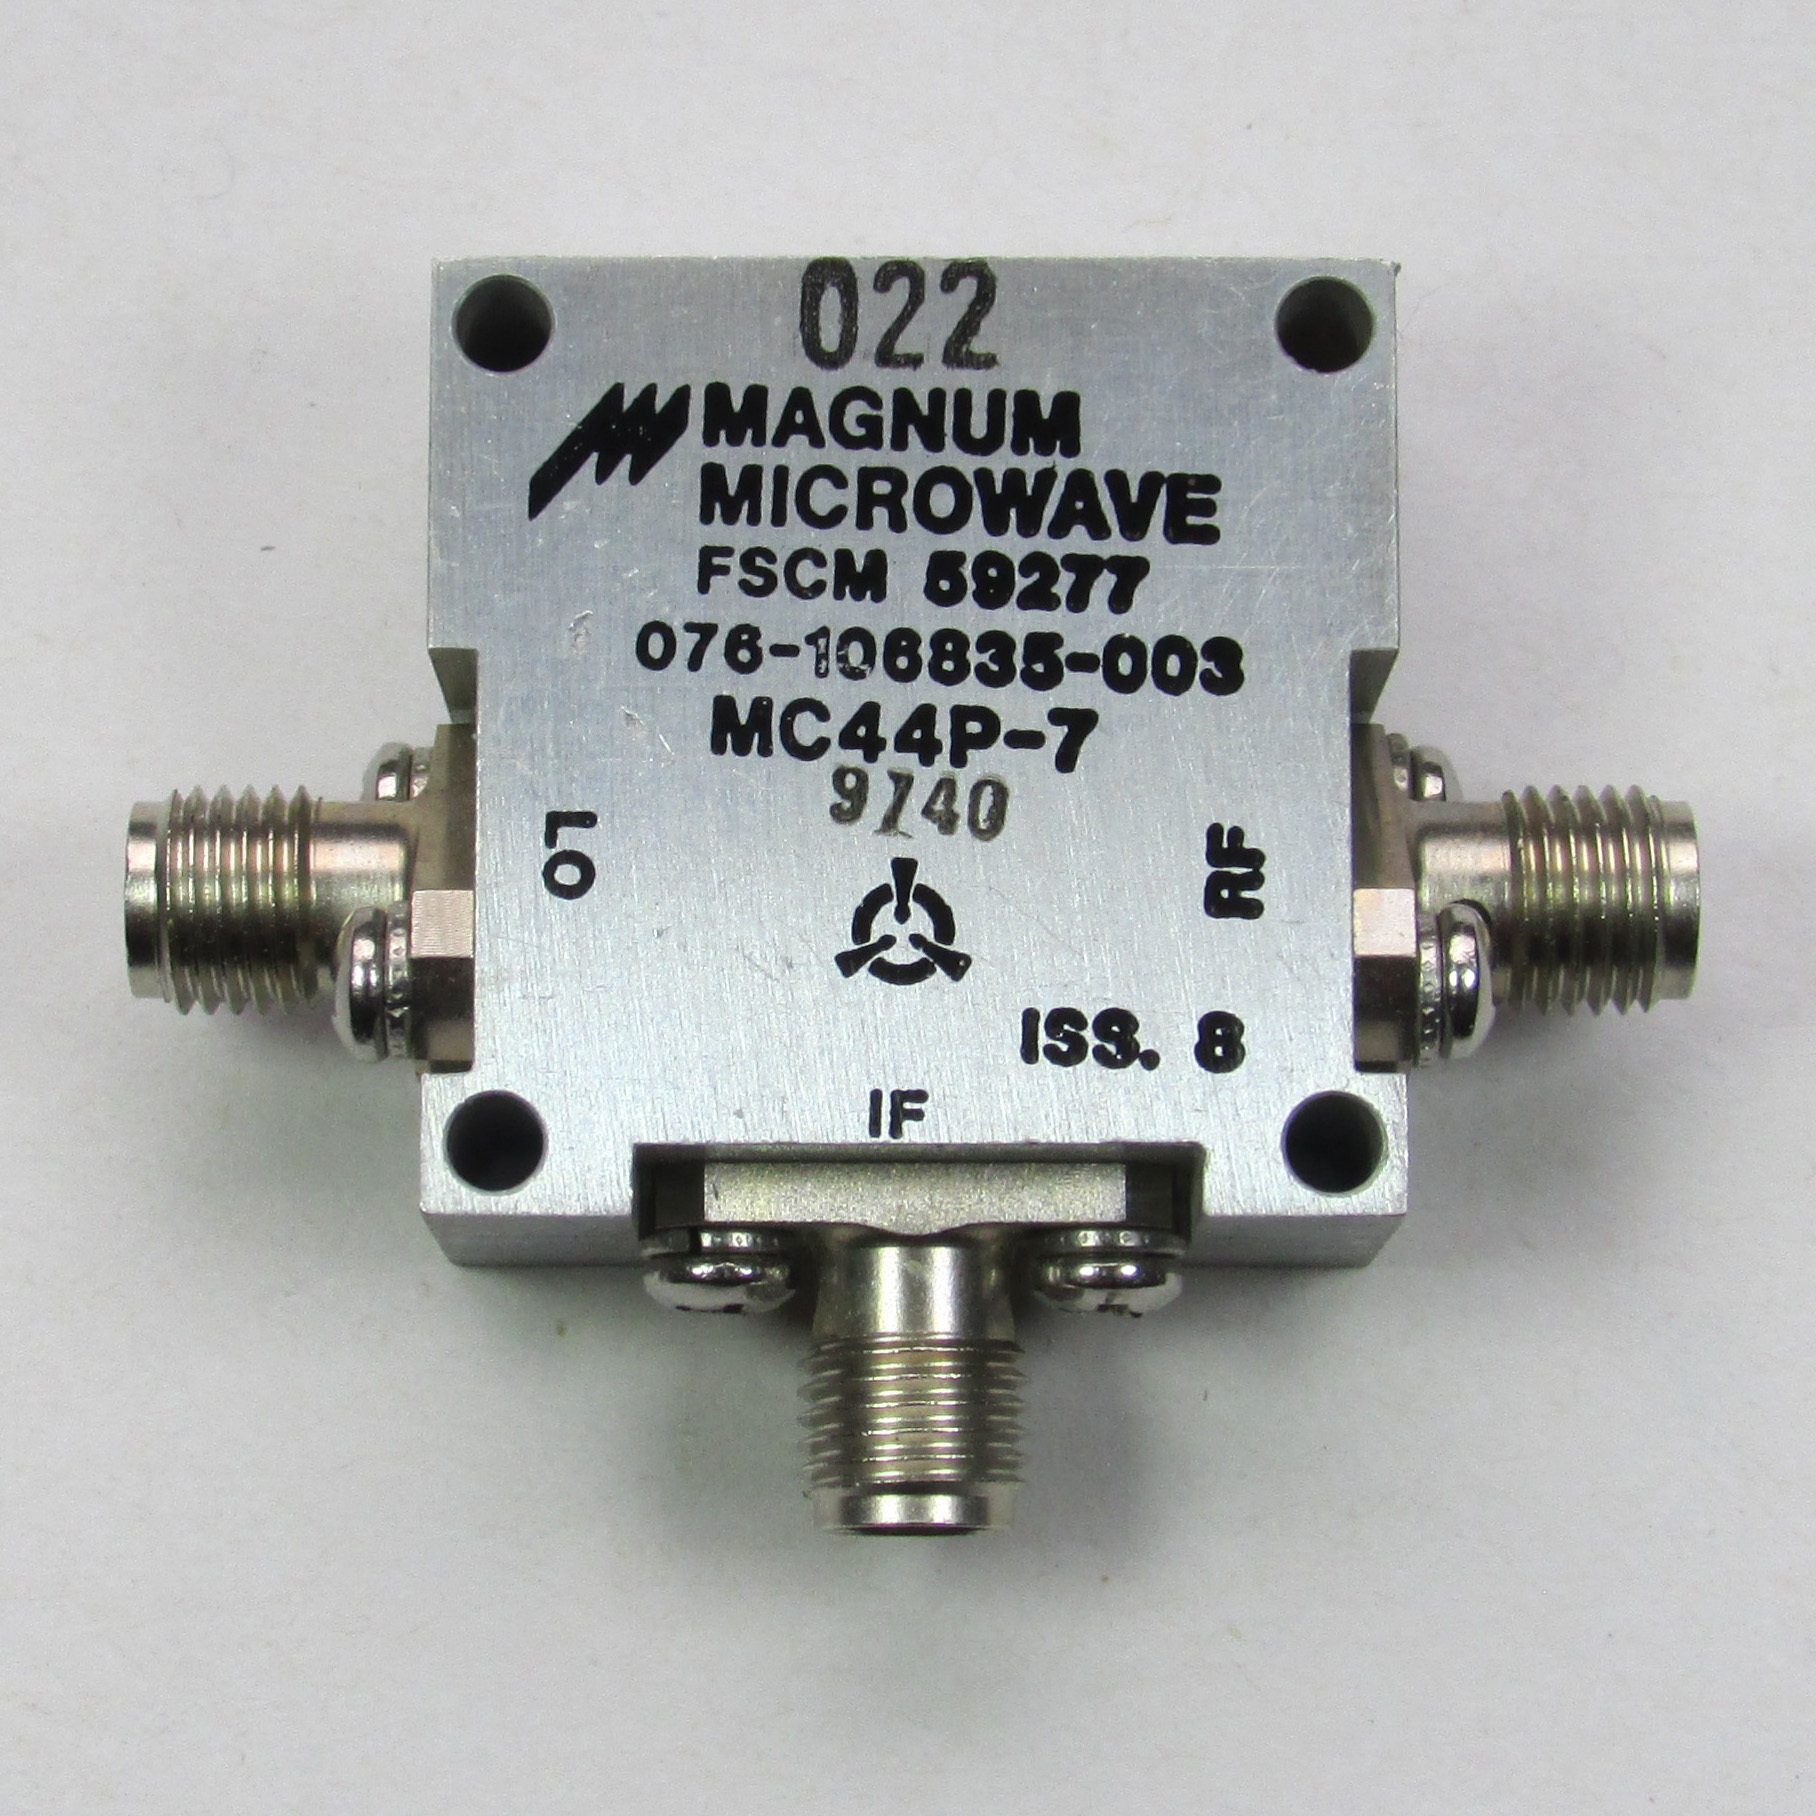 MAGNUM MC44P-7 3.5-8.5GHz SMA RF Coaxial Double Balanced Mixer